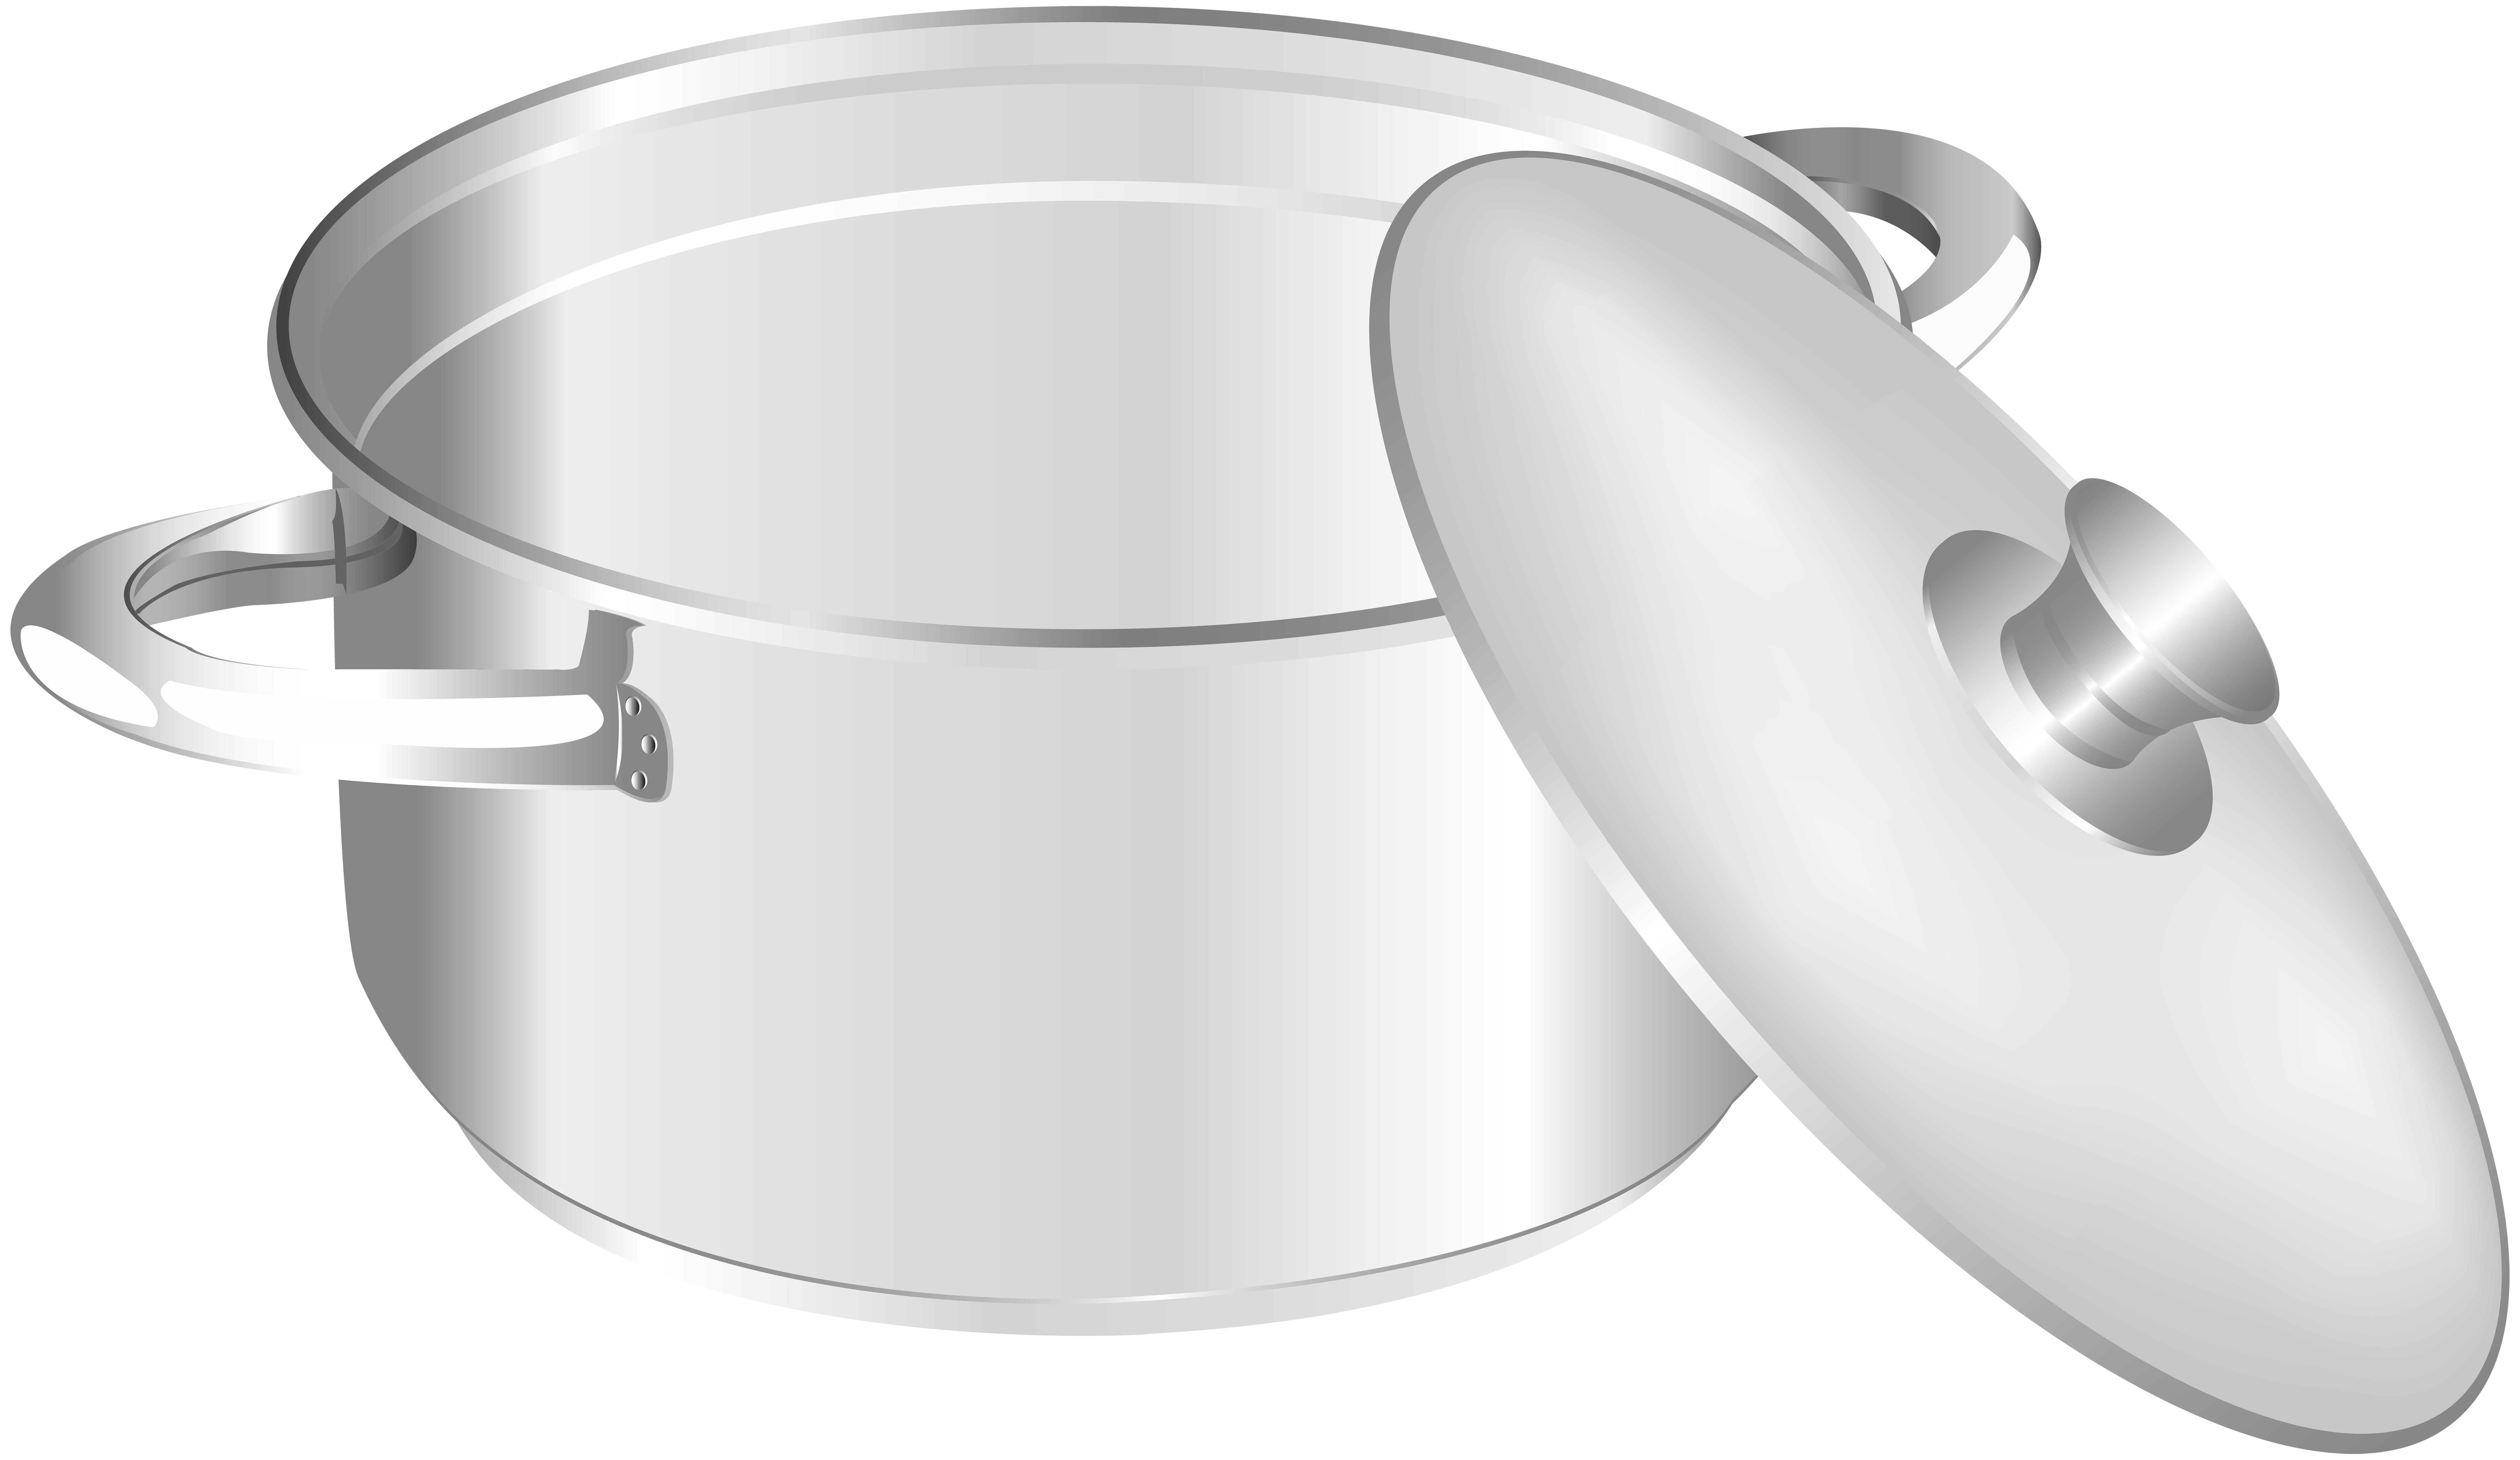 soup clipart soup kettle